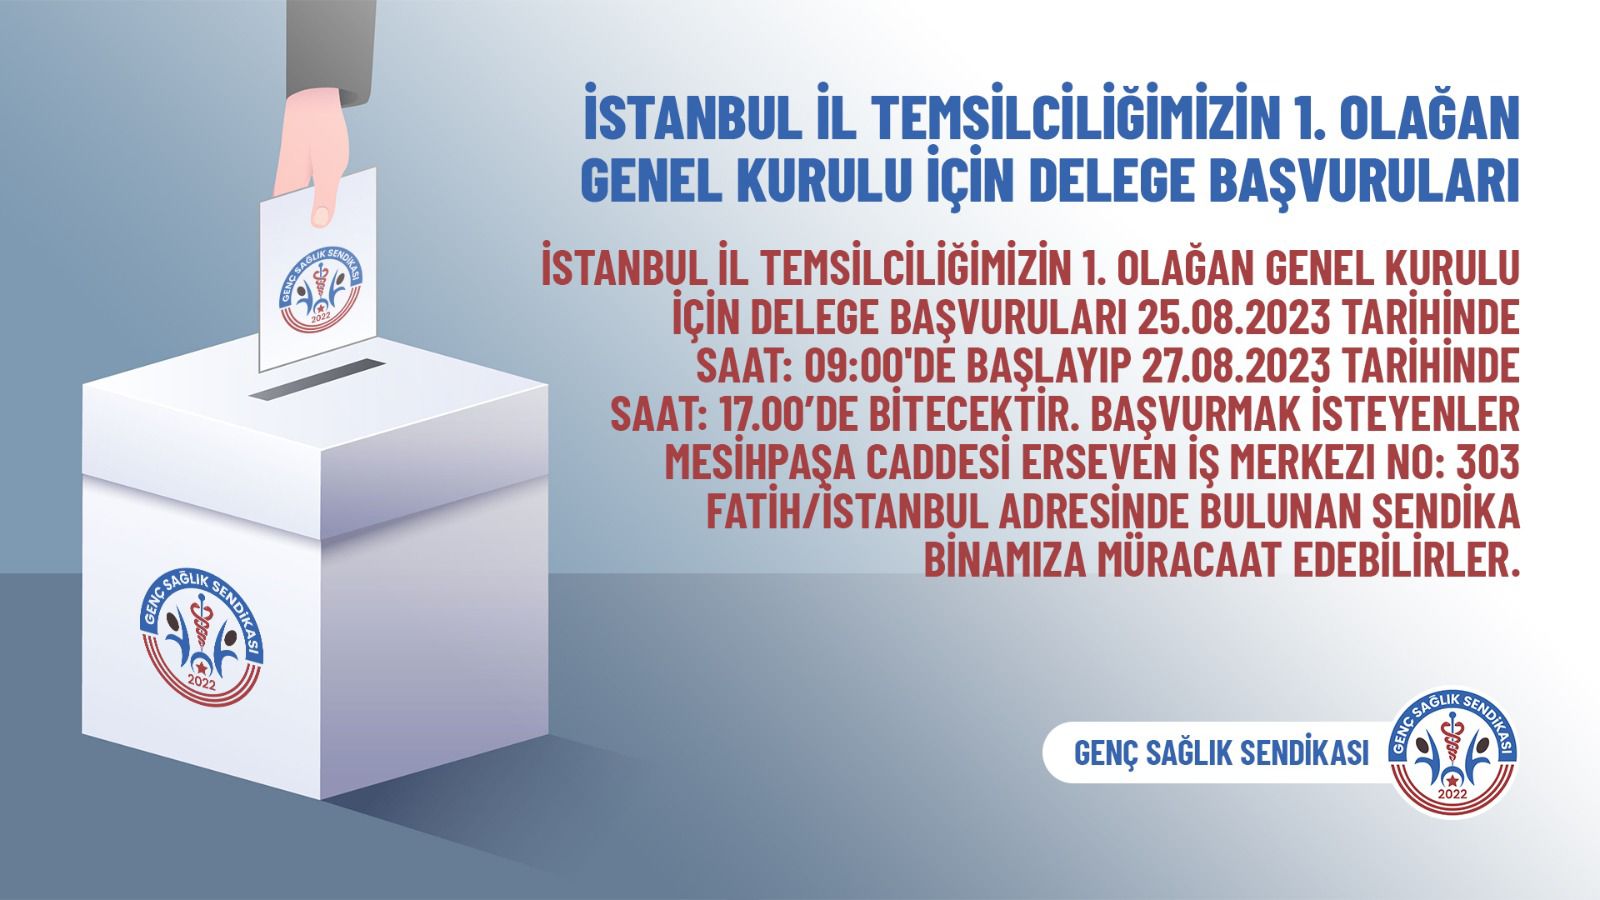 İstanbul İl Temsilciliğimizin 1. Olağan Genel Kurulu İçin Delege Başvuruları